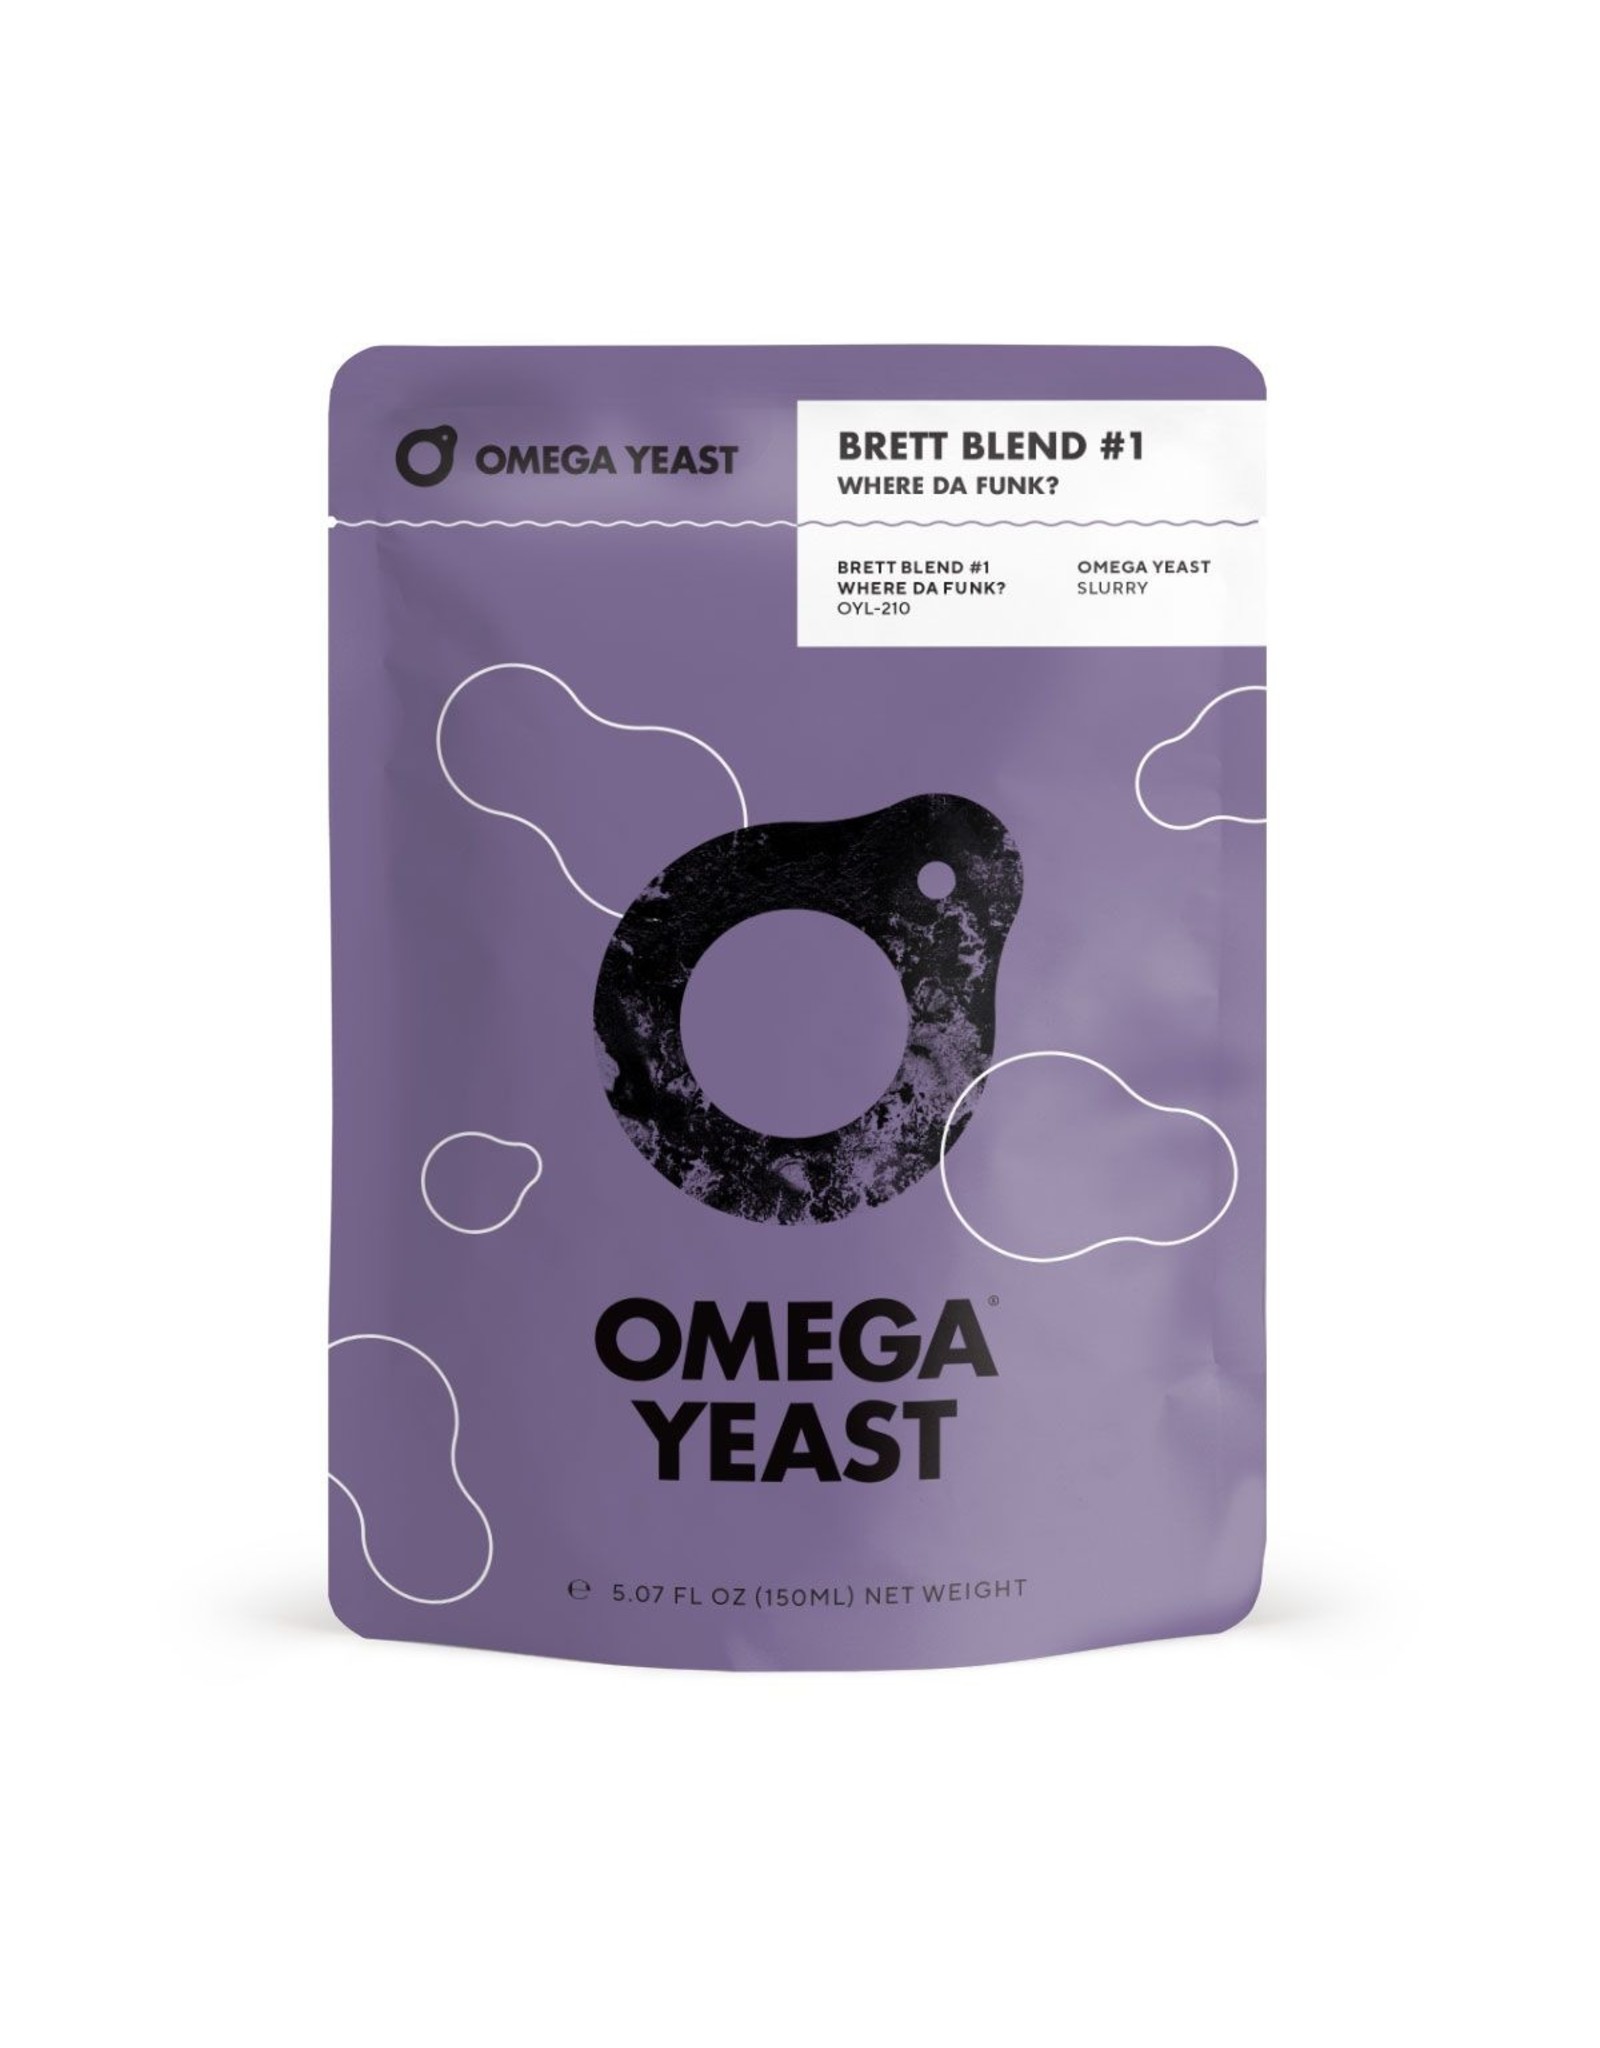 Omega Omega Yeast - Brettanomyces Blend #1: WHERE DA FUNK?